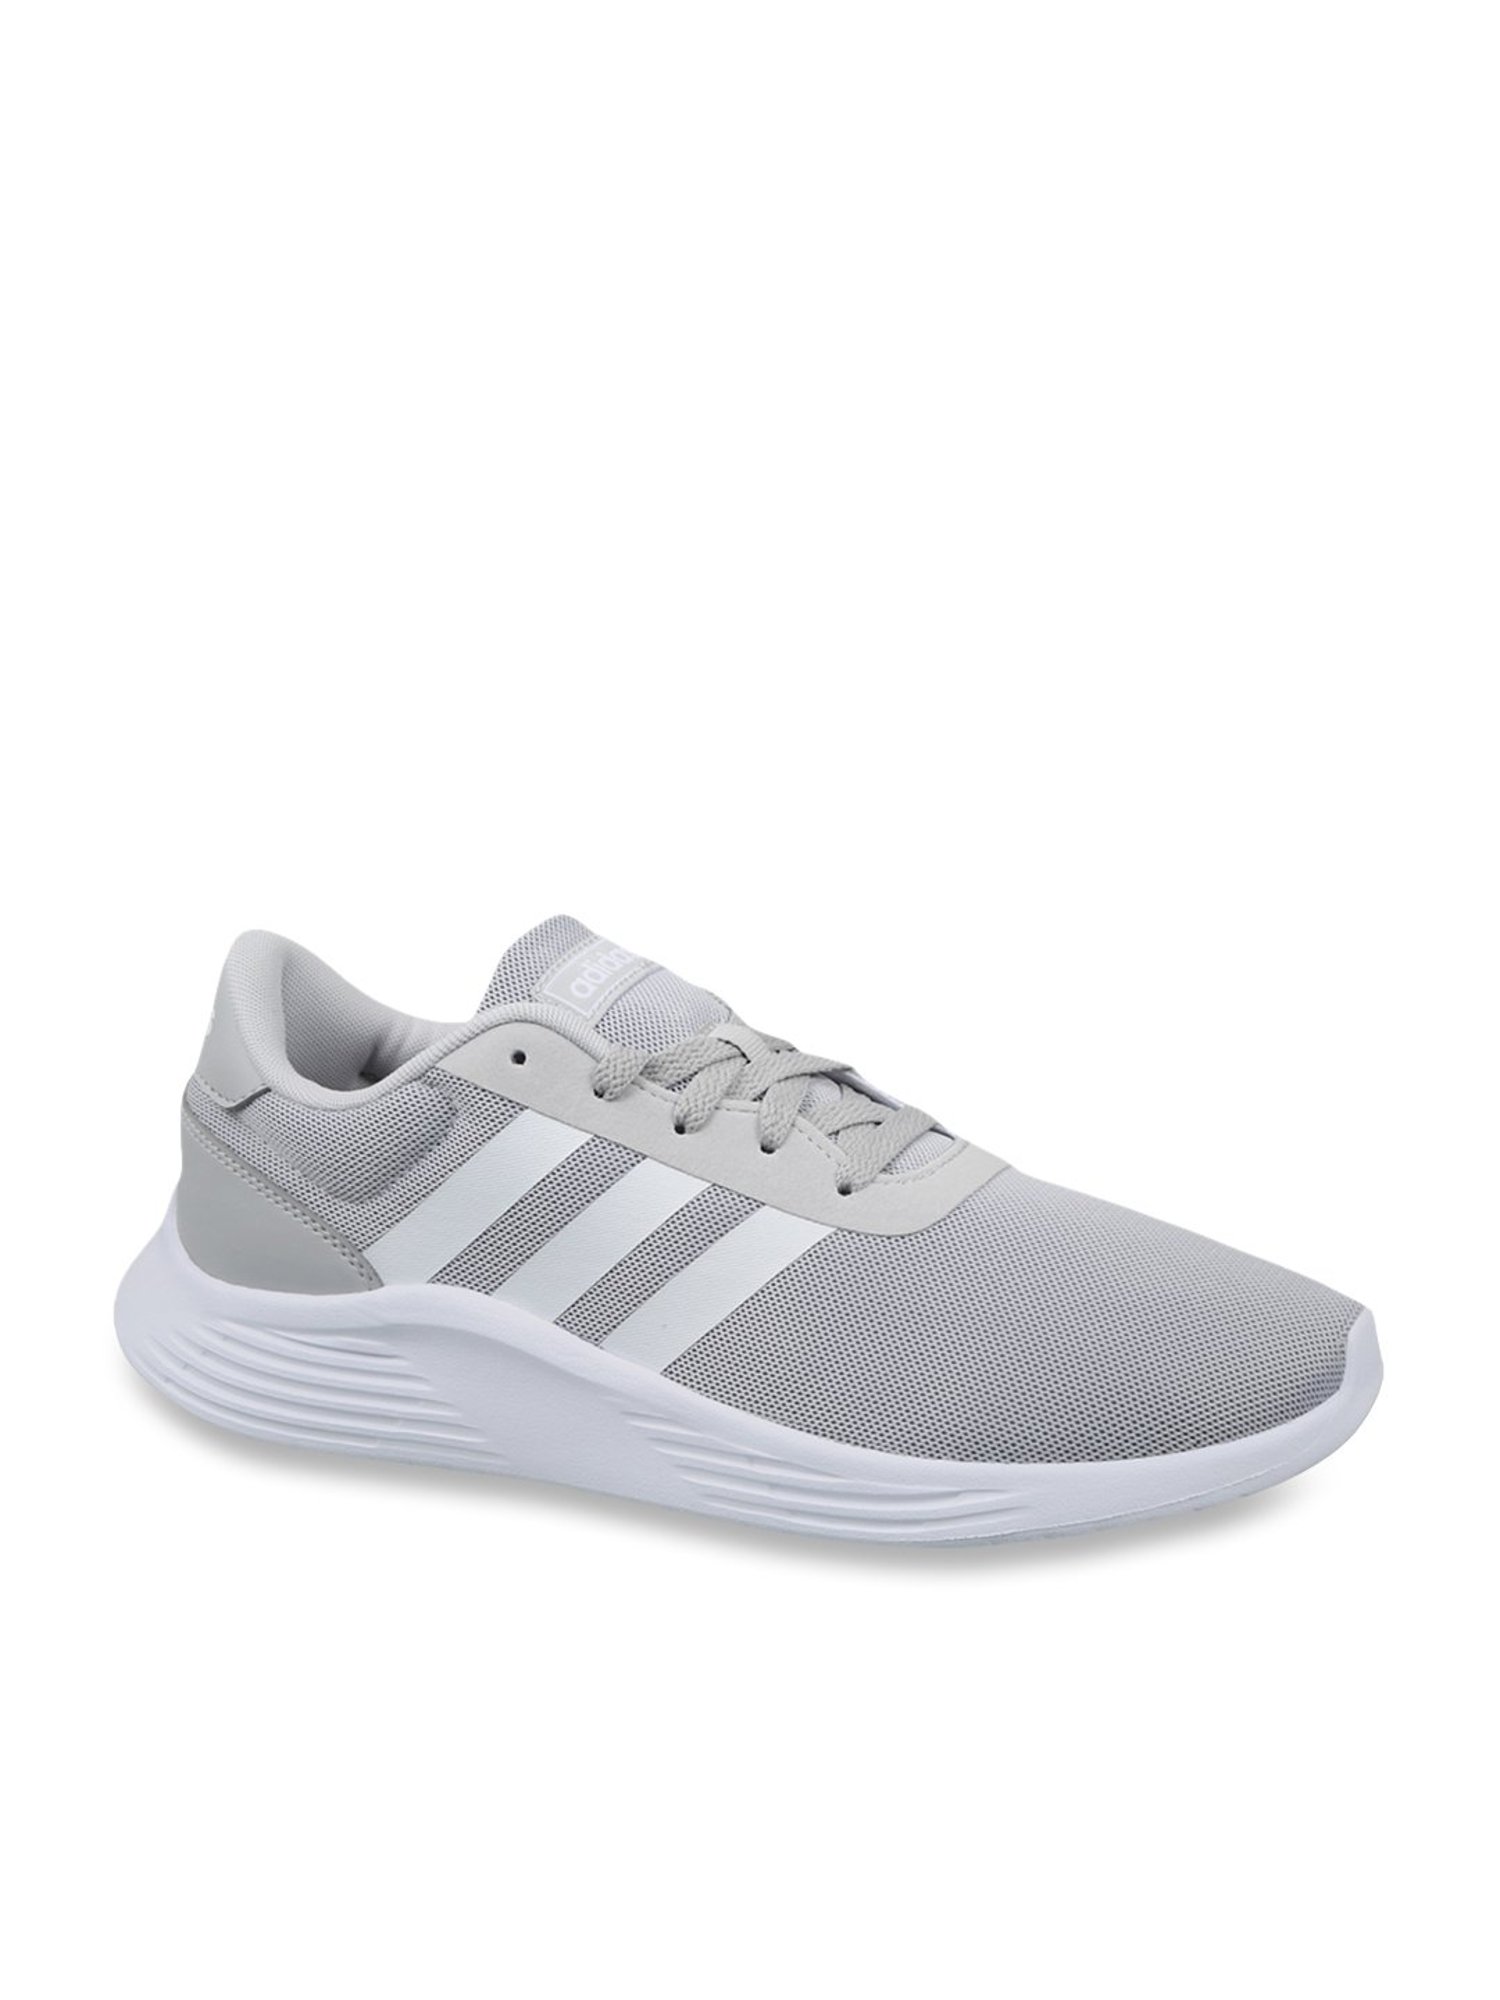 verlamming pijnlijk waar dan ook Buy Adidas Lite Racer 2.0 Light Grey Running Shoes for Men at Best Price @  Tata CLiQ